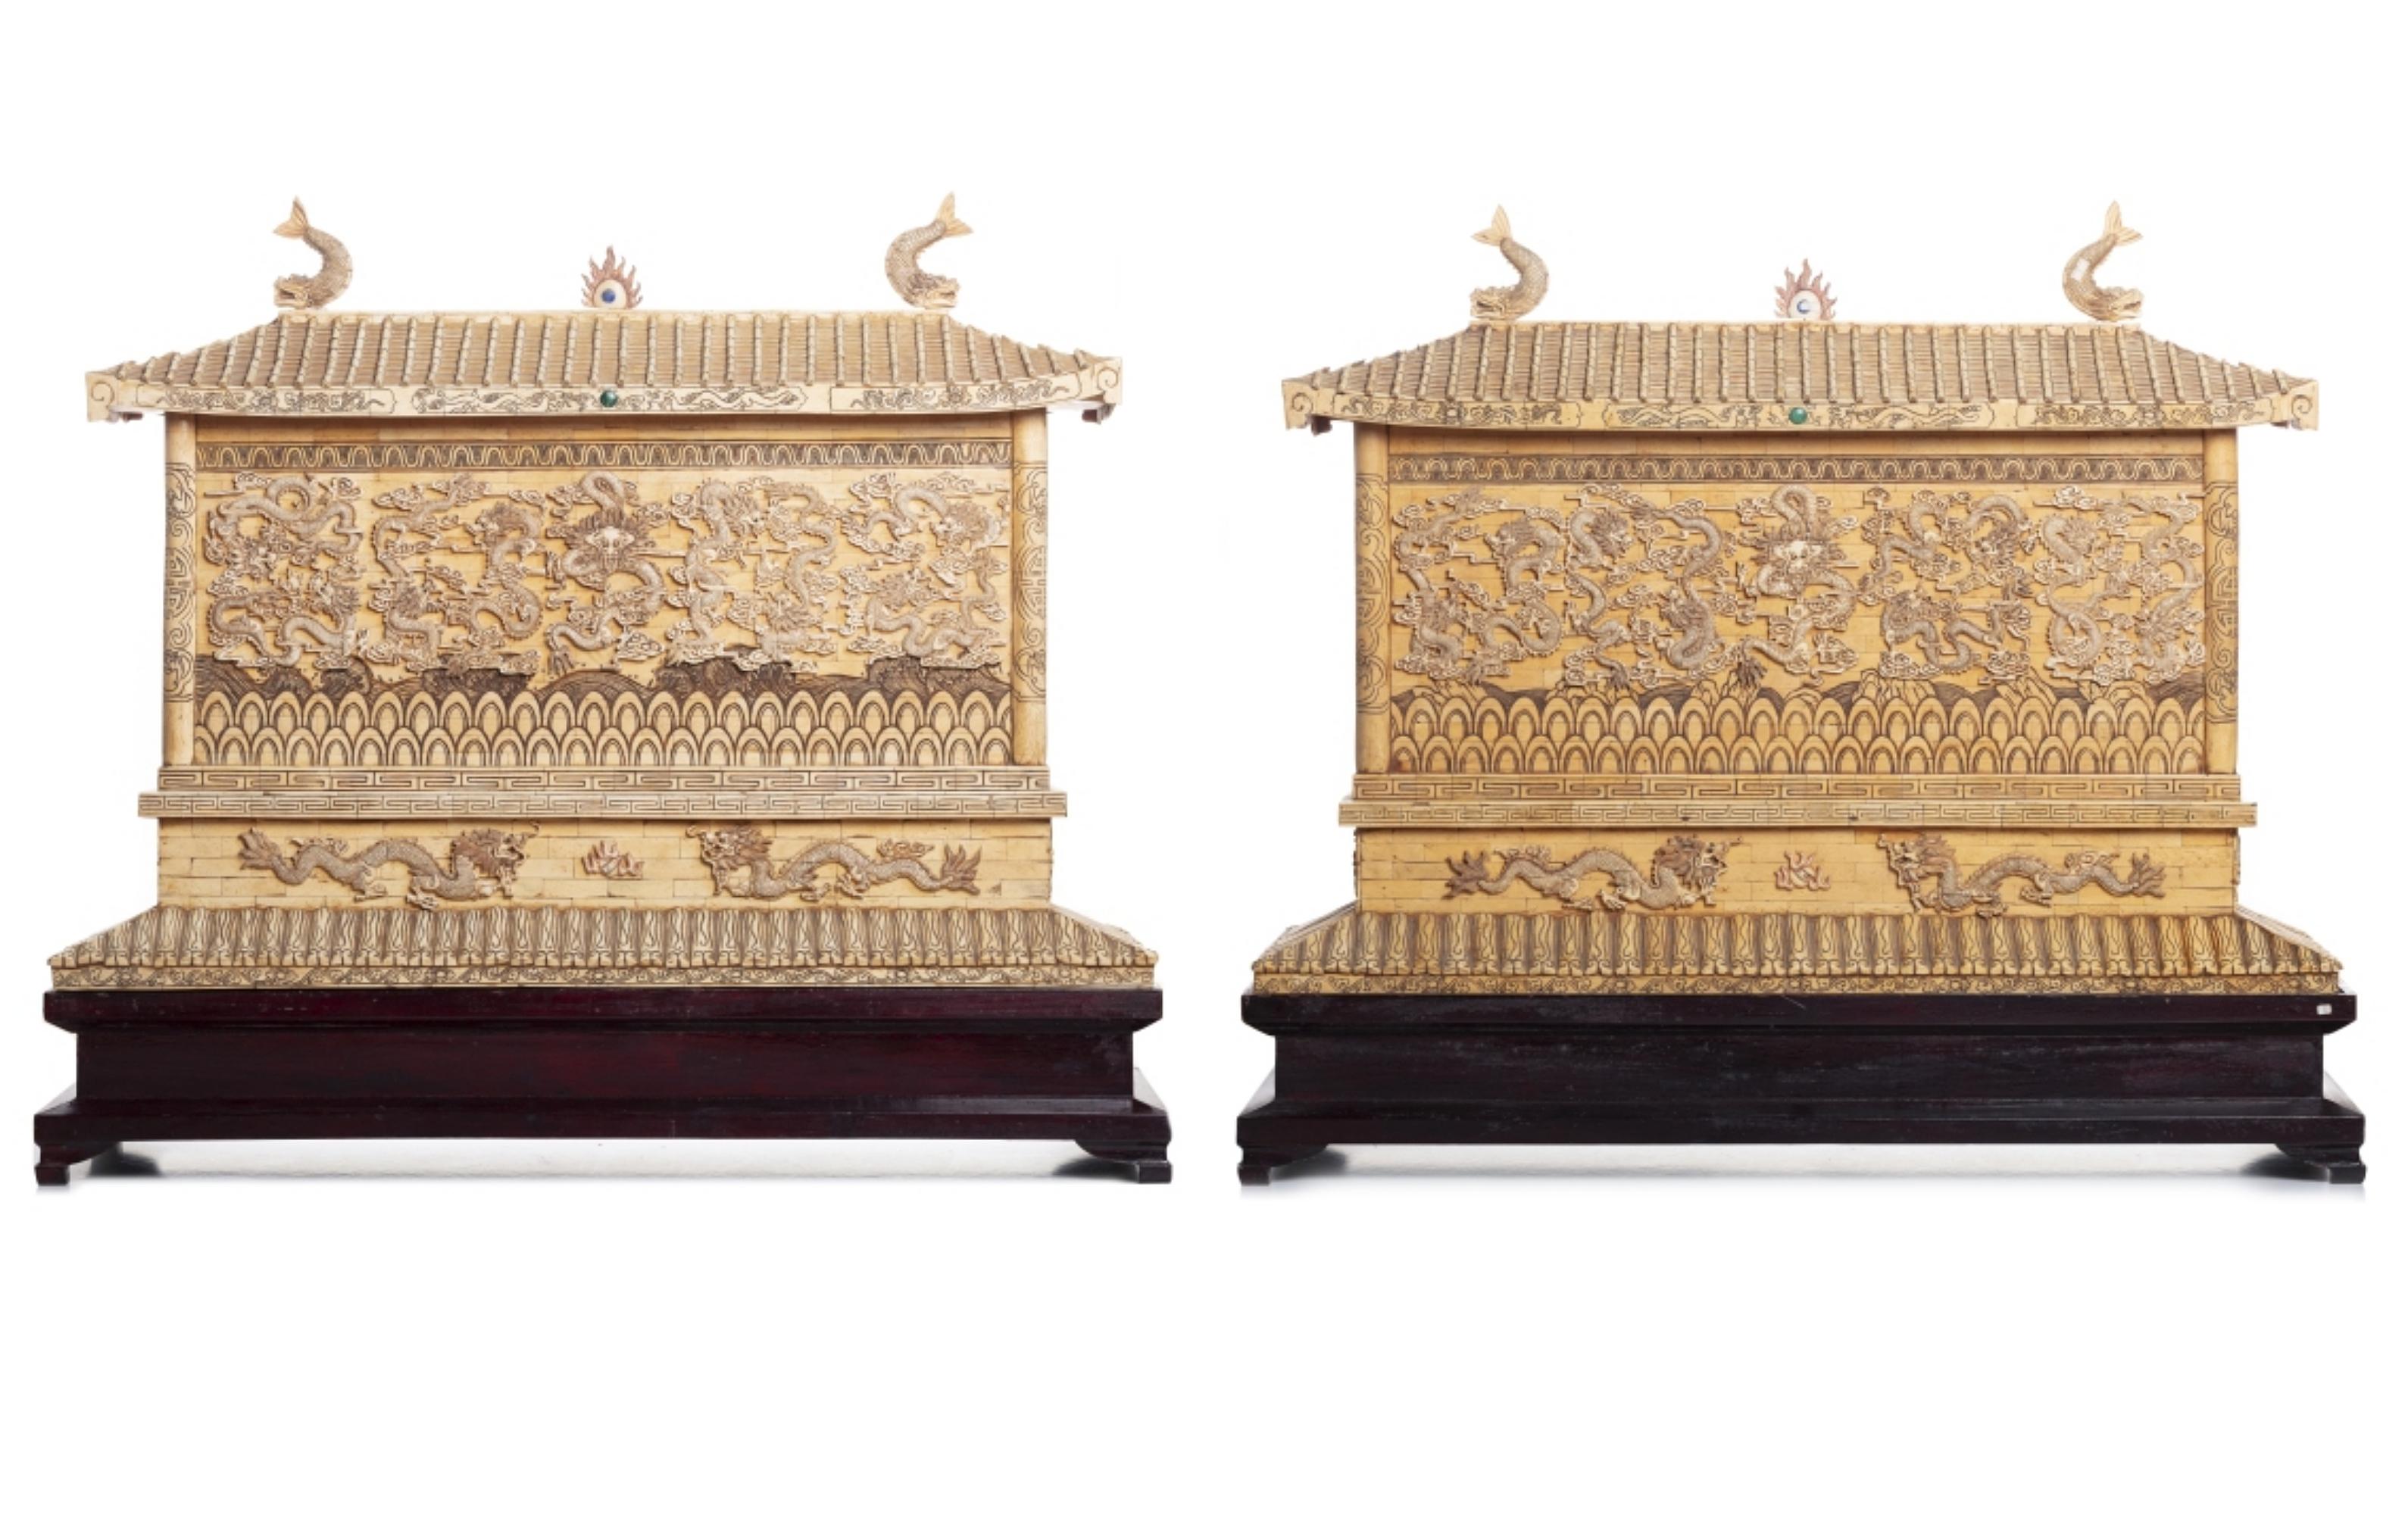 Ein Paar großer Drachentempel.

Chinesische Minguo-Periode (1912-1949), aus geschnitzten Knochenplatten. Mit detaillierten Drachenschnitzereien. Auf einem Holzsockel sitzend, Maße: (Bügel) 66 x 95 x 31 cm. Maße: (insgesamt) 94 x 101 x 34 cm.
Gute